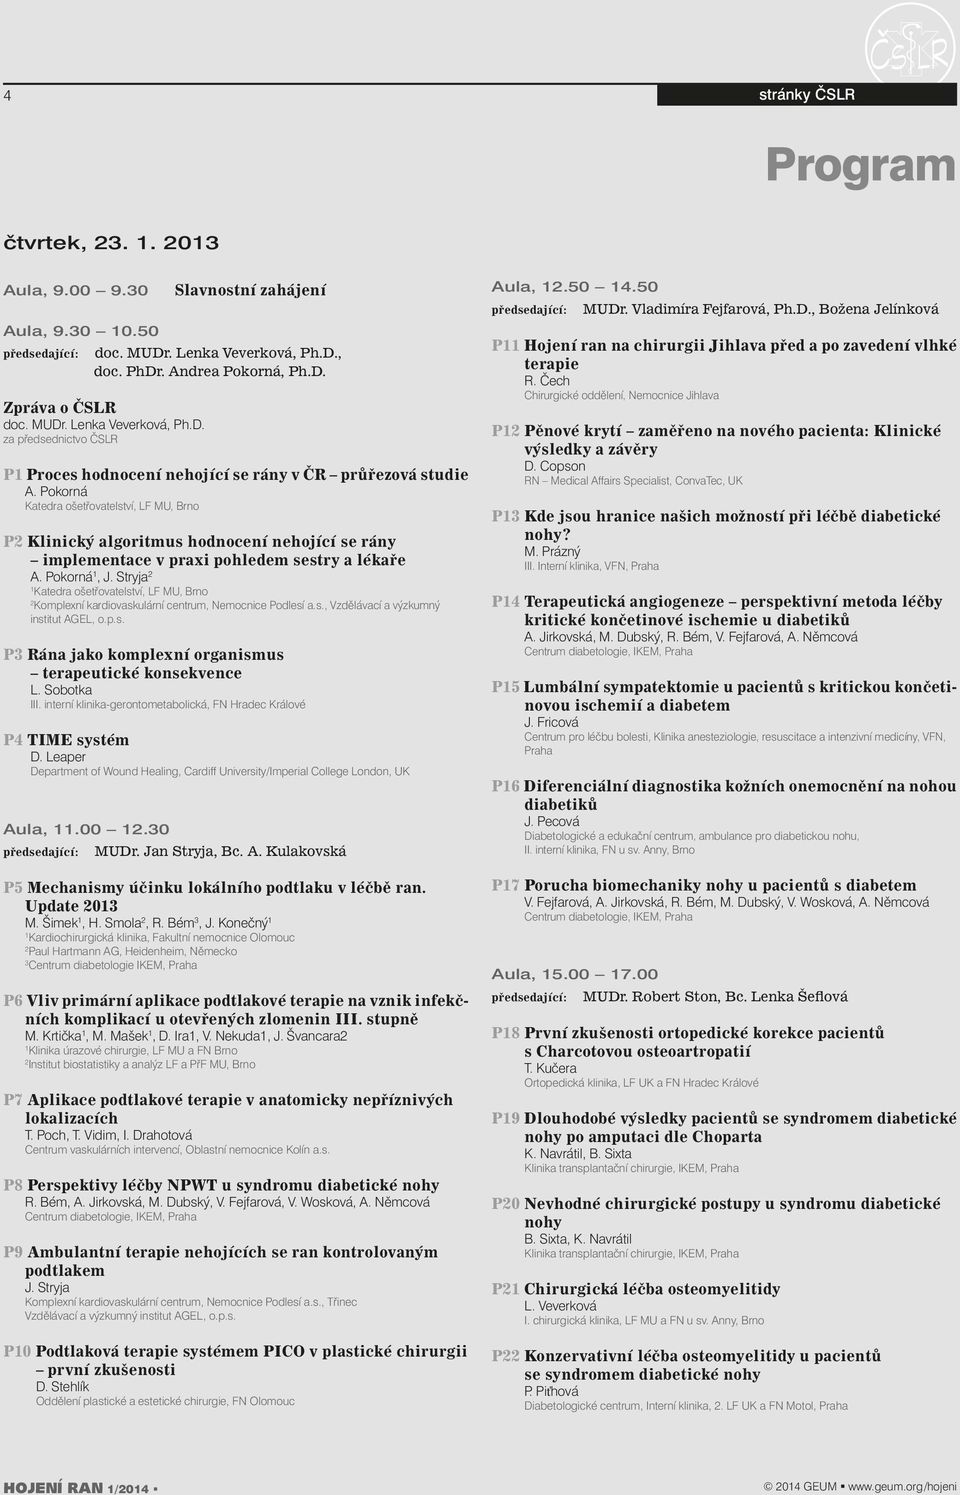 Stryja Katedra ošetřovatelství, LF MU, Brno Komplexní kardiovaskulární centrum, Nemocnice Podlesí a.s., Vzdělávací a výzkumný institut AGEL, o.p.s. P3 Rána jako komplexní organismus terapeutické konsekvence L.